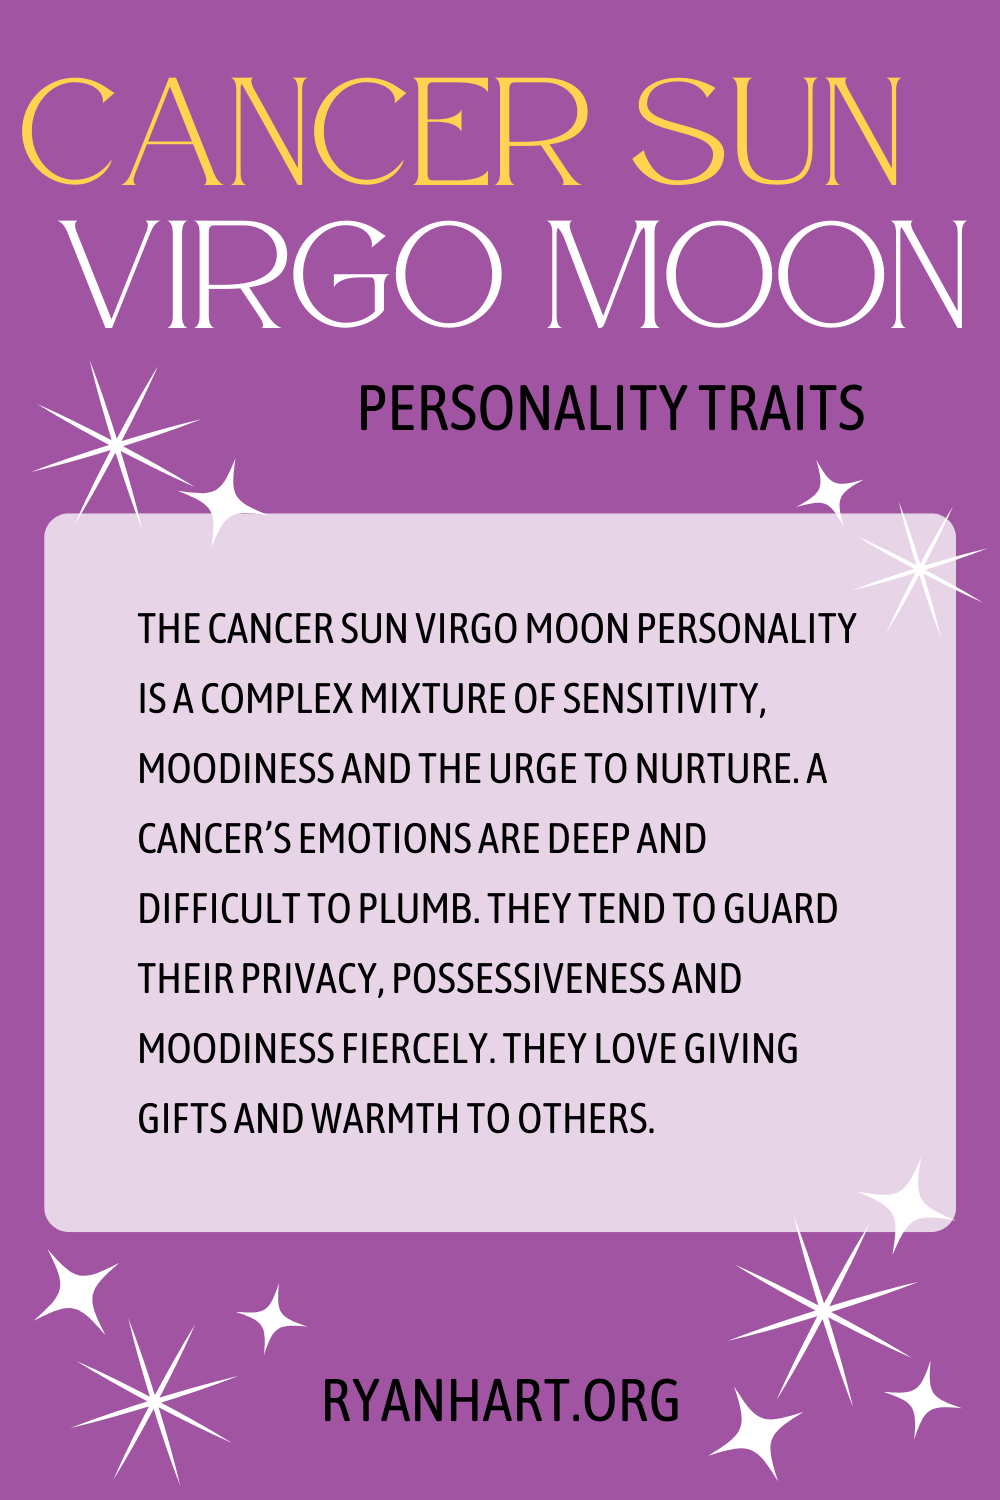 Cancer Sun Virgo Moon Description